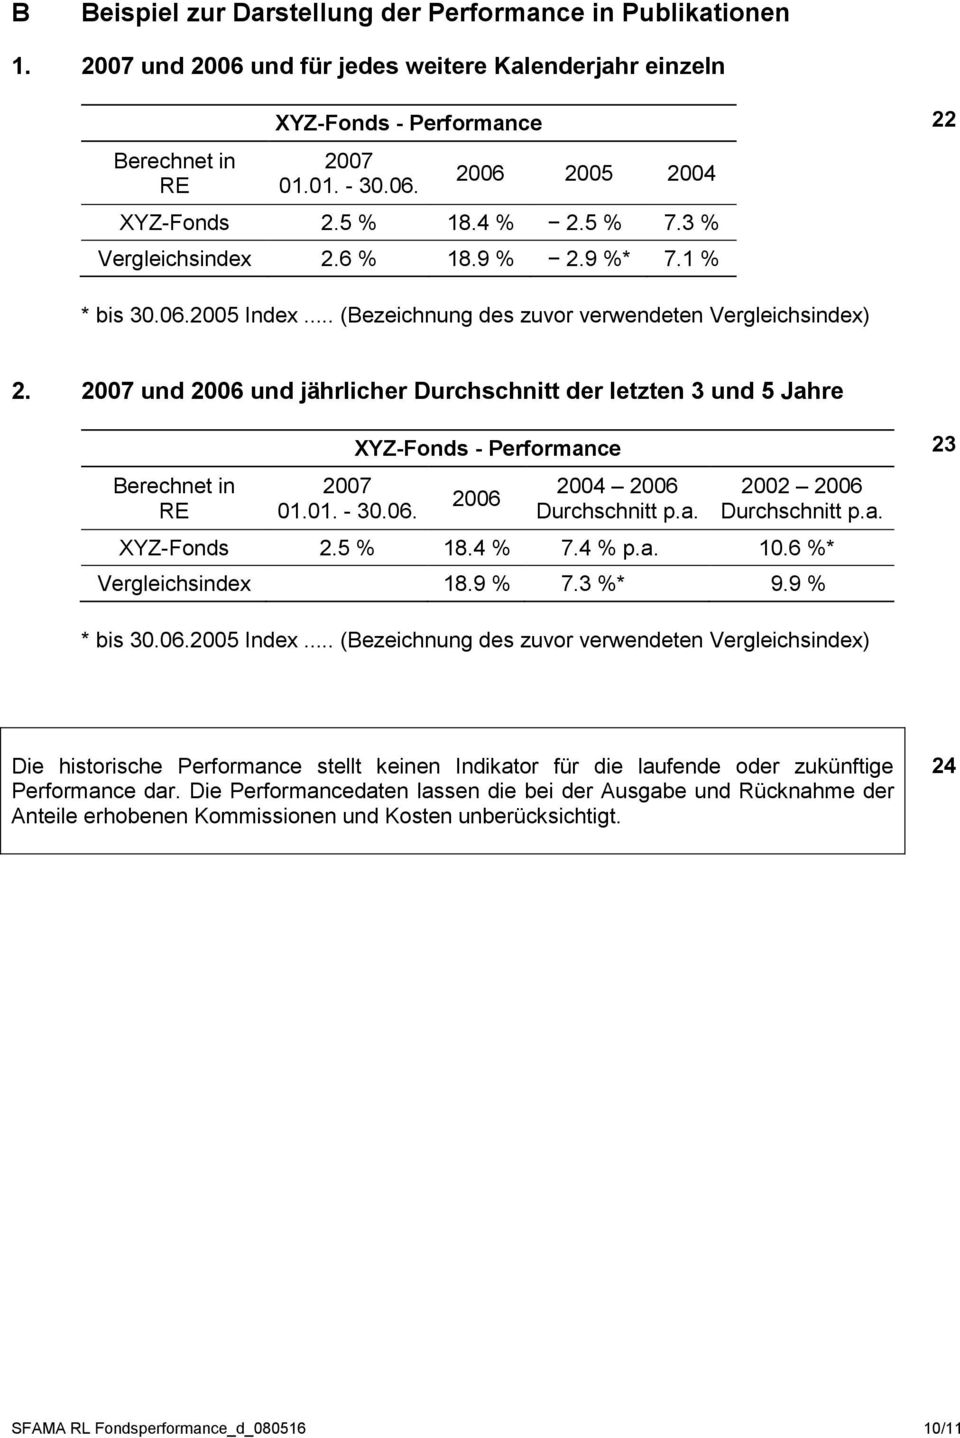 2007 und 2006 und jährlicher Durchschnitt der letzten 3 und 5 Jahre Berechnet in RE 2007 01.01. - 30.06. XYZ-Fonds - Performance 2006 2004 2006 Durchschnitt p.a. 2002 2006 Durchschnitt p.a. XYZ-Fonds 2.